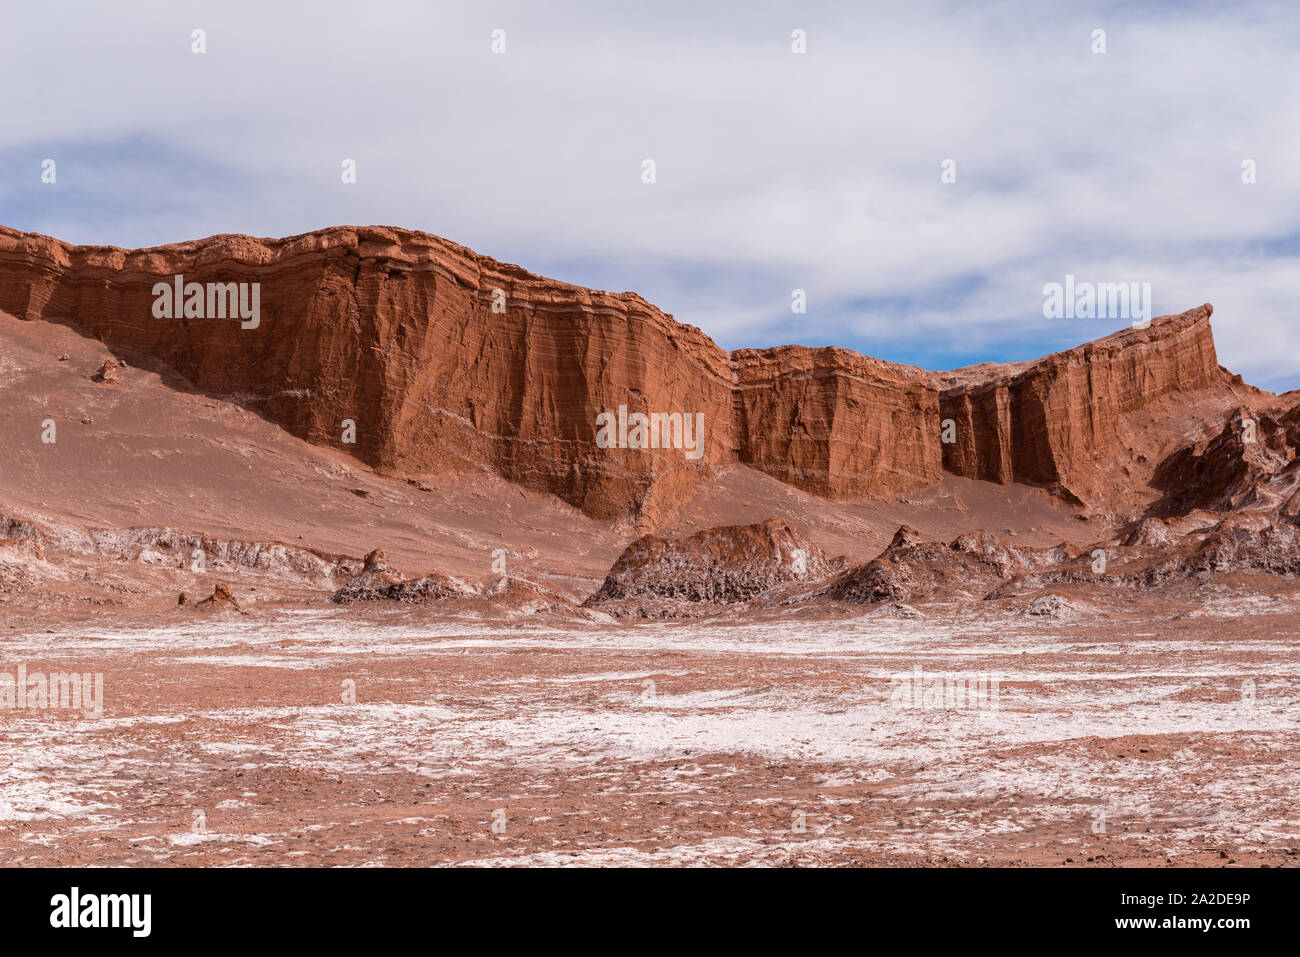 Formación de roca "Amphi Theatre' en el Valle de la Luna o Valle de la Luna, San Pedro de Atacama, República de Chile, América Latina Foto de stock